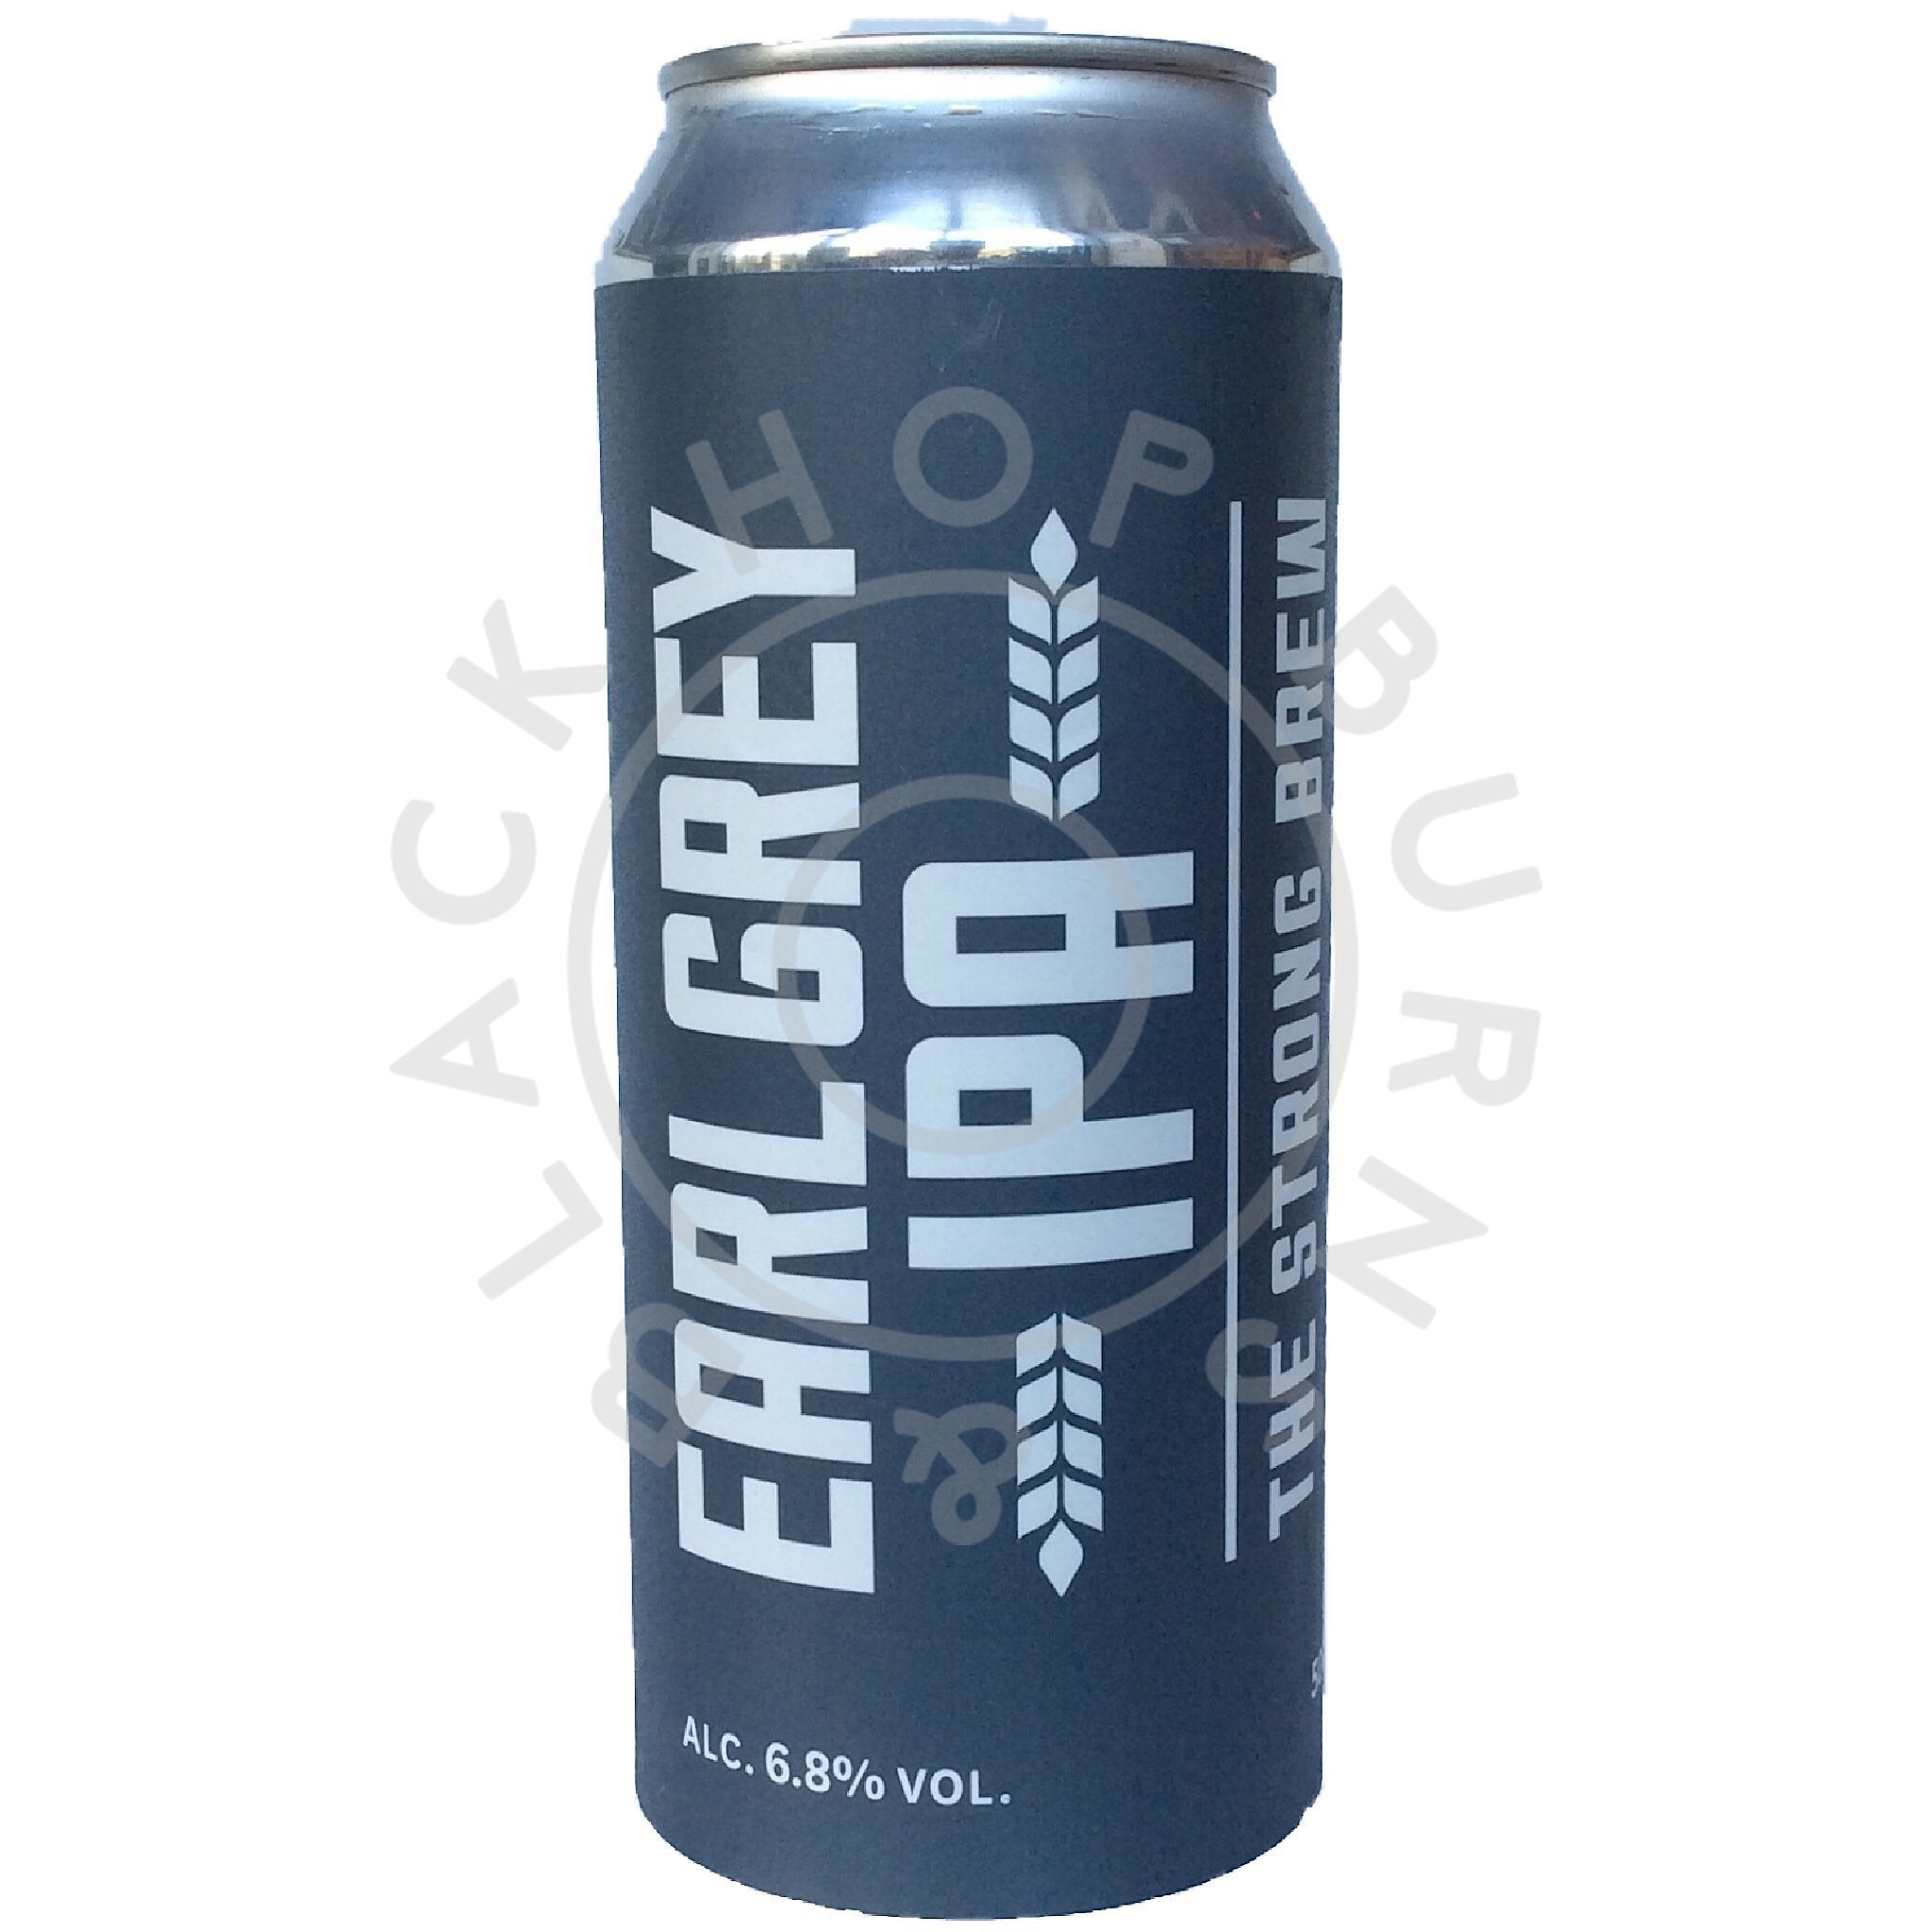 Marble Earl Grey IPA 6.8% (500ml can)-Hop Burns & Black